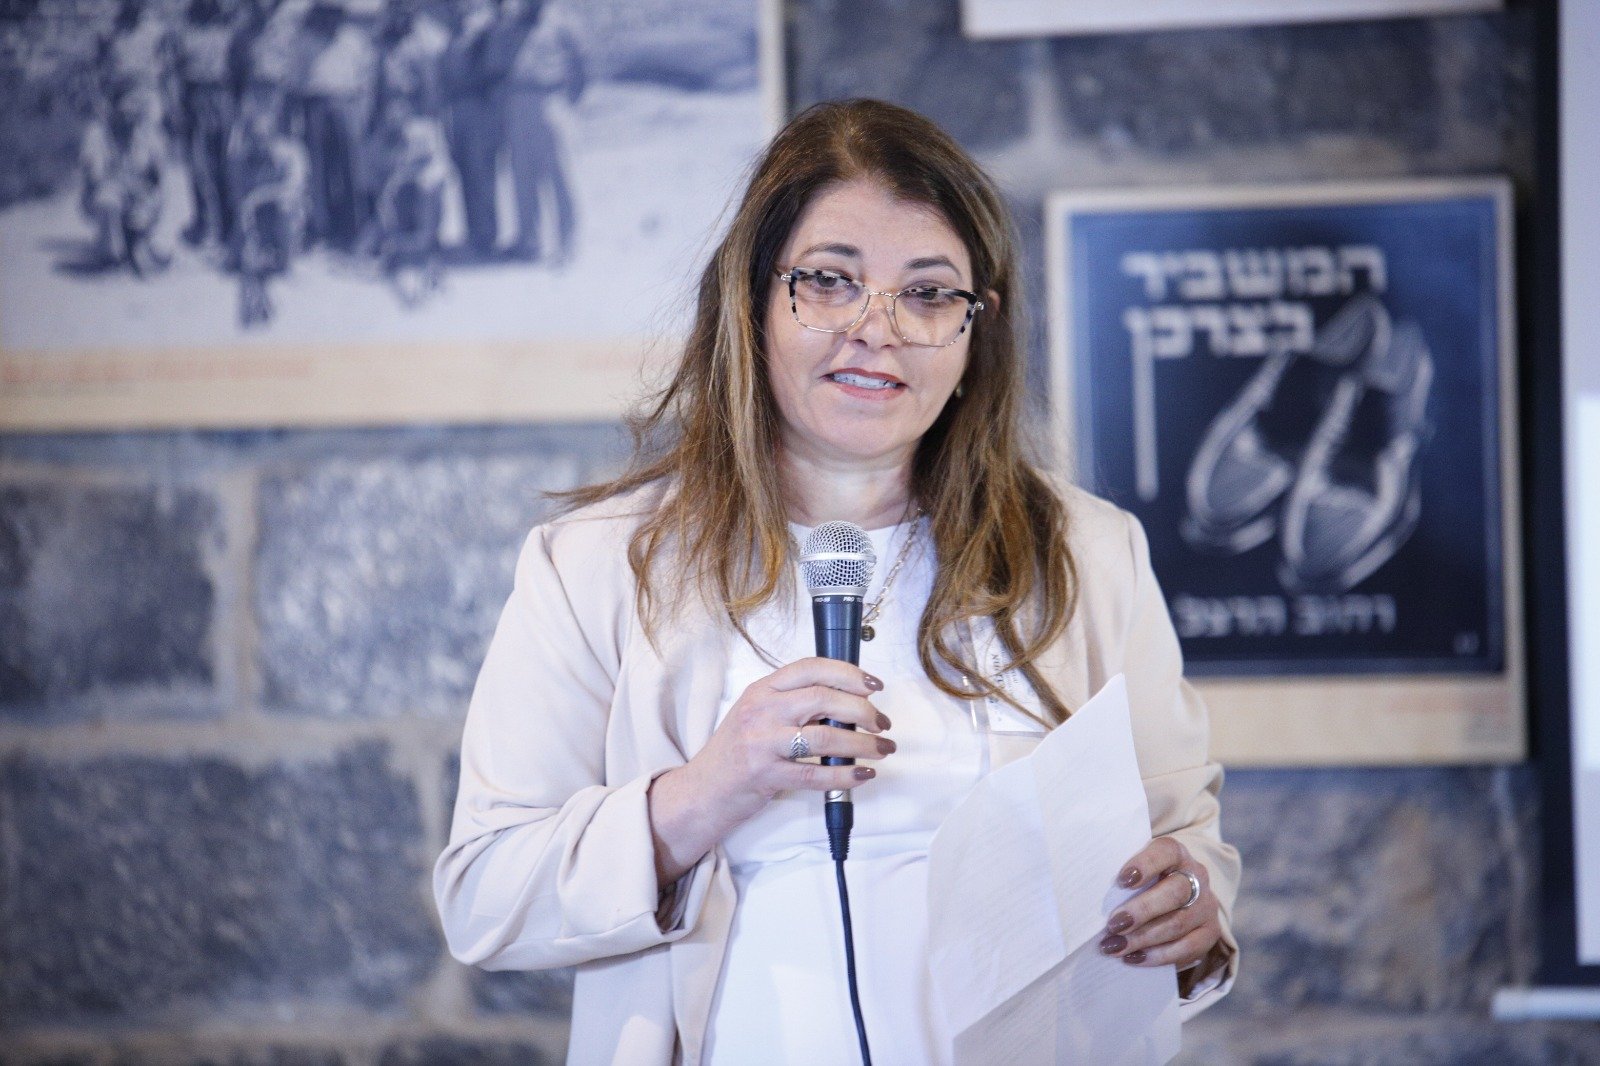 سريا نجيدات لبكرا: "مؤتمر اشكول يهدف الى تمكين المرأة اجتماعيًا واقتصاديُا"-1